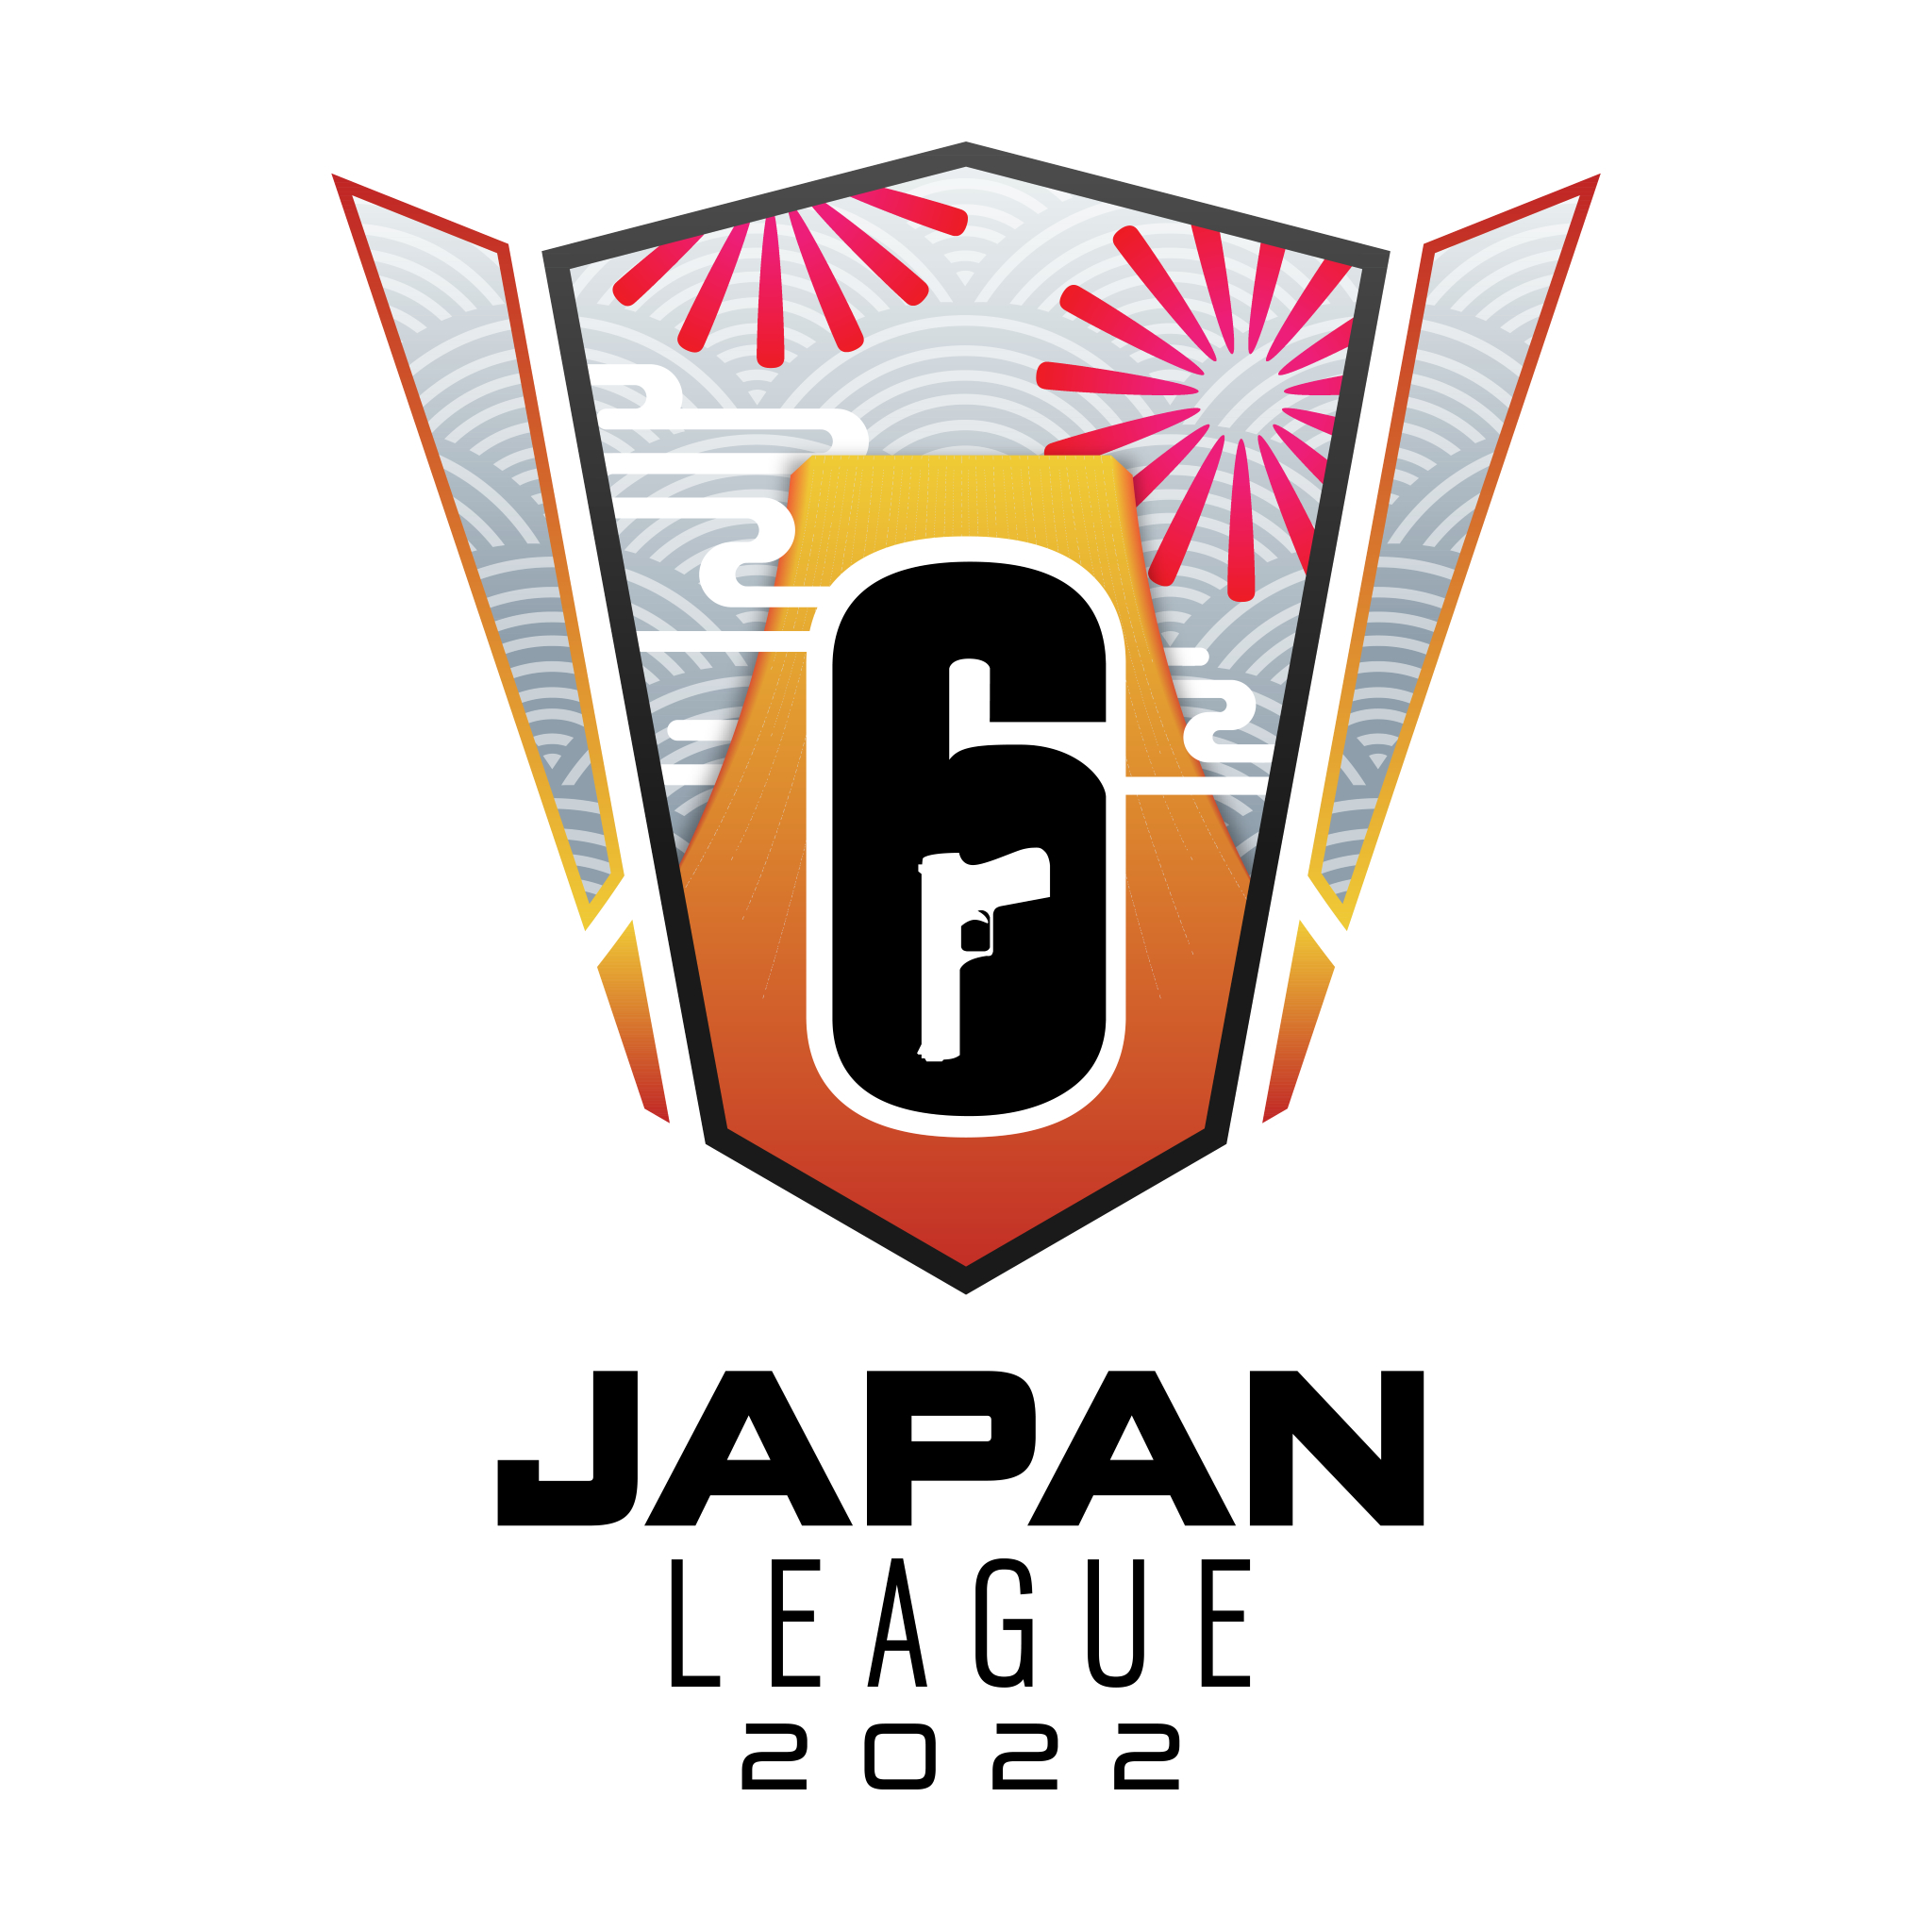 6/4・5に『Rainbow Six Japan League 2022』のオフライン大会が開催される